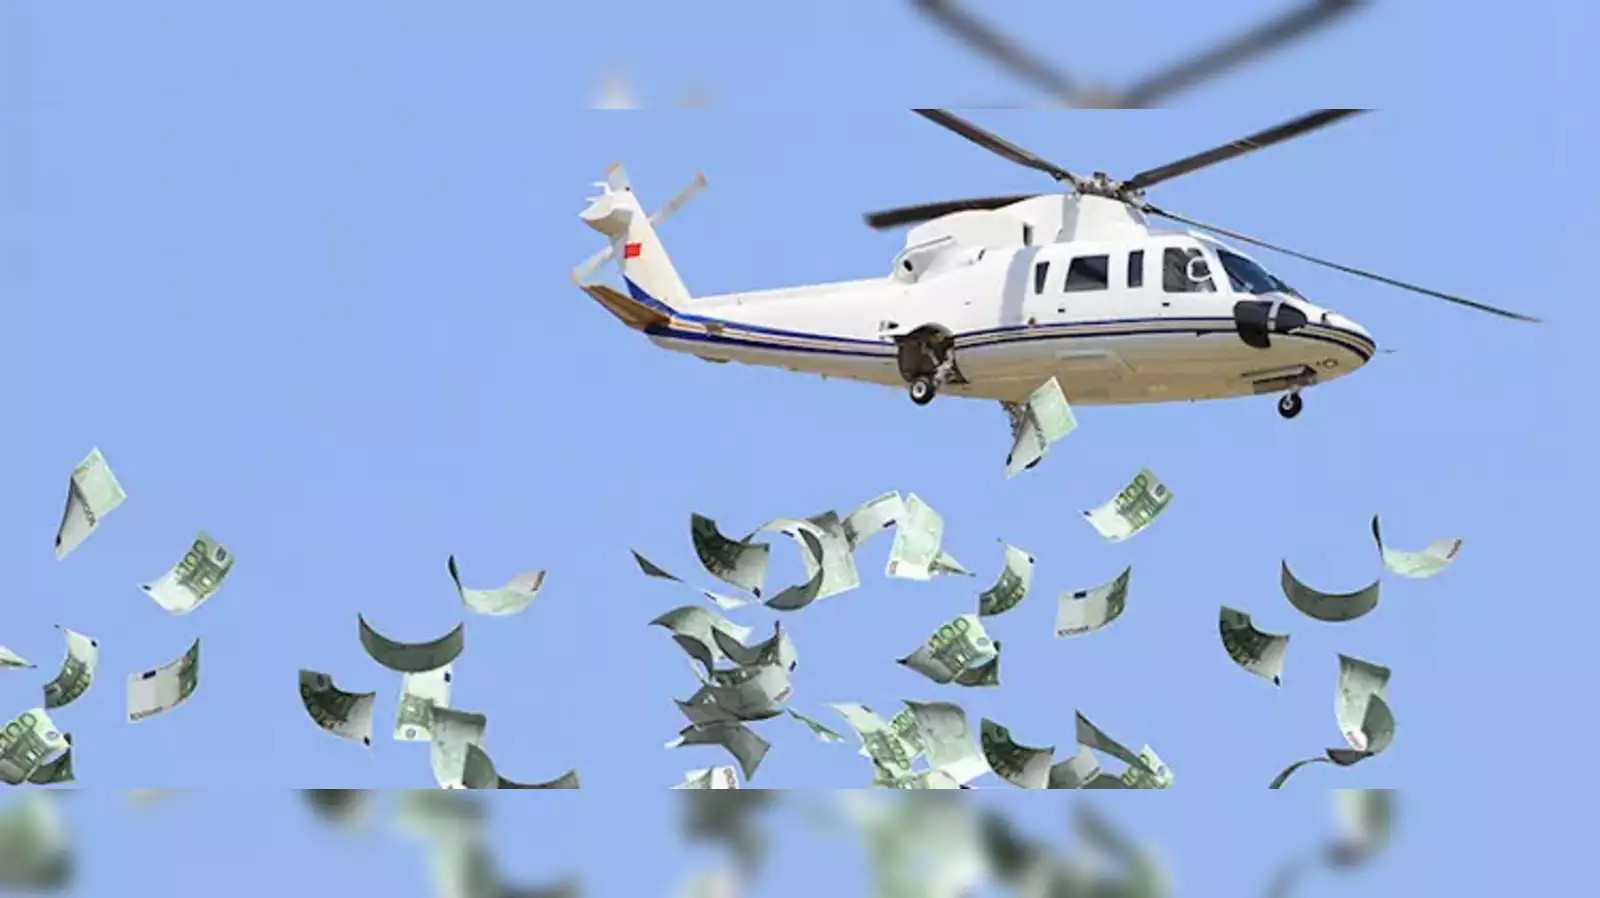 Τσέχος influencer πέταξε 1.000.000 δολάρια από ελικόπτερο